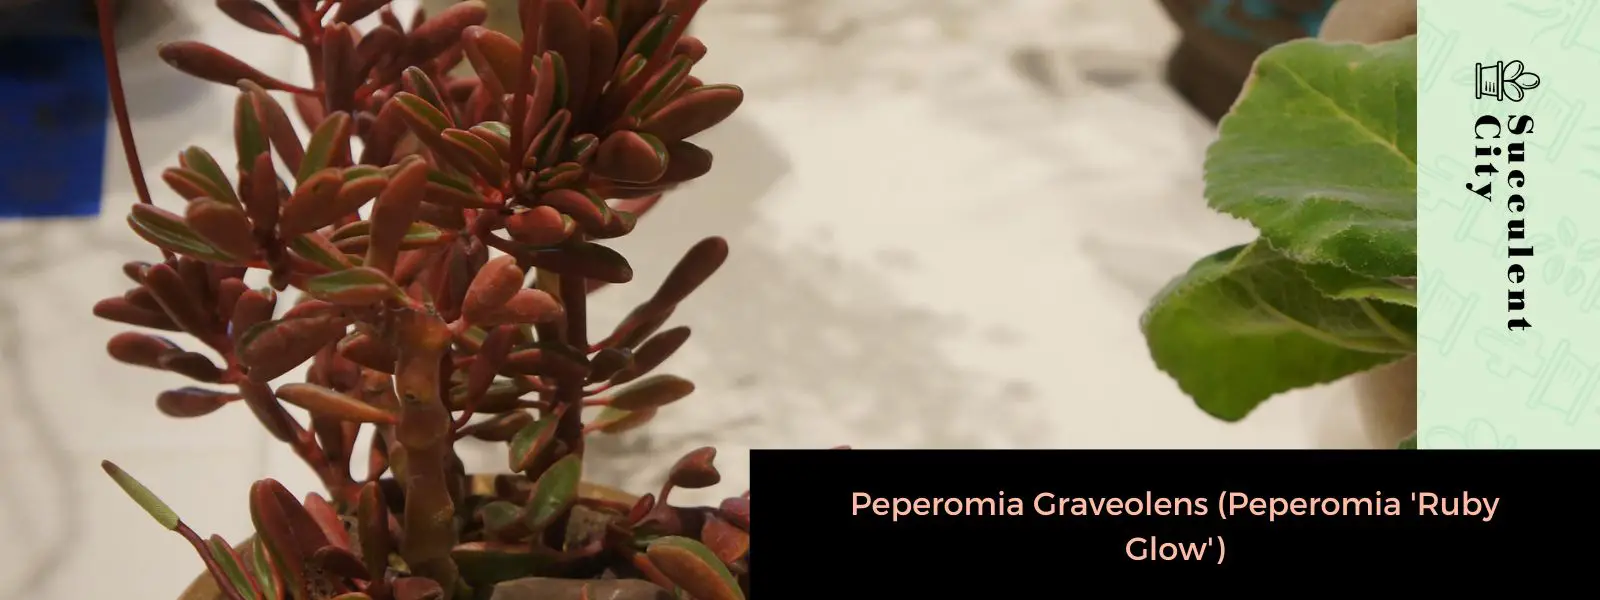 Peperomia Graveolens (Peperomia “Ruby Glow”)